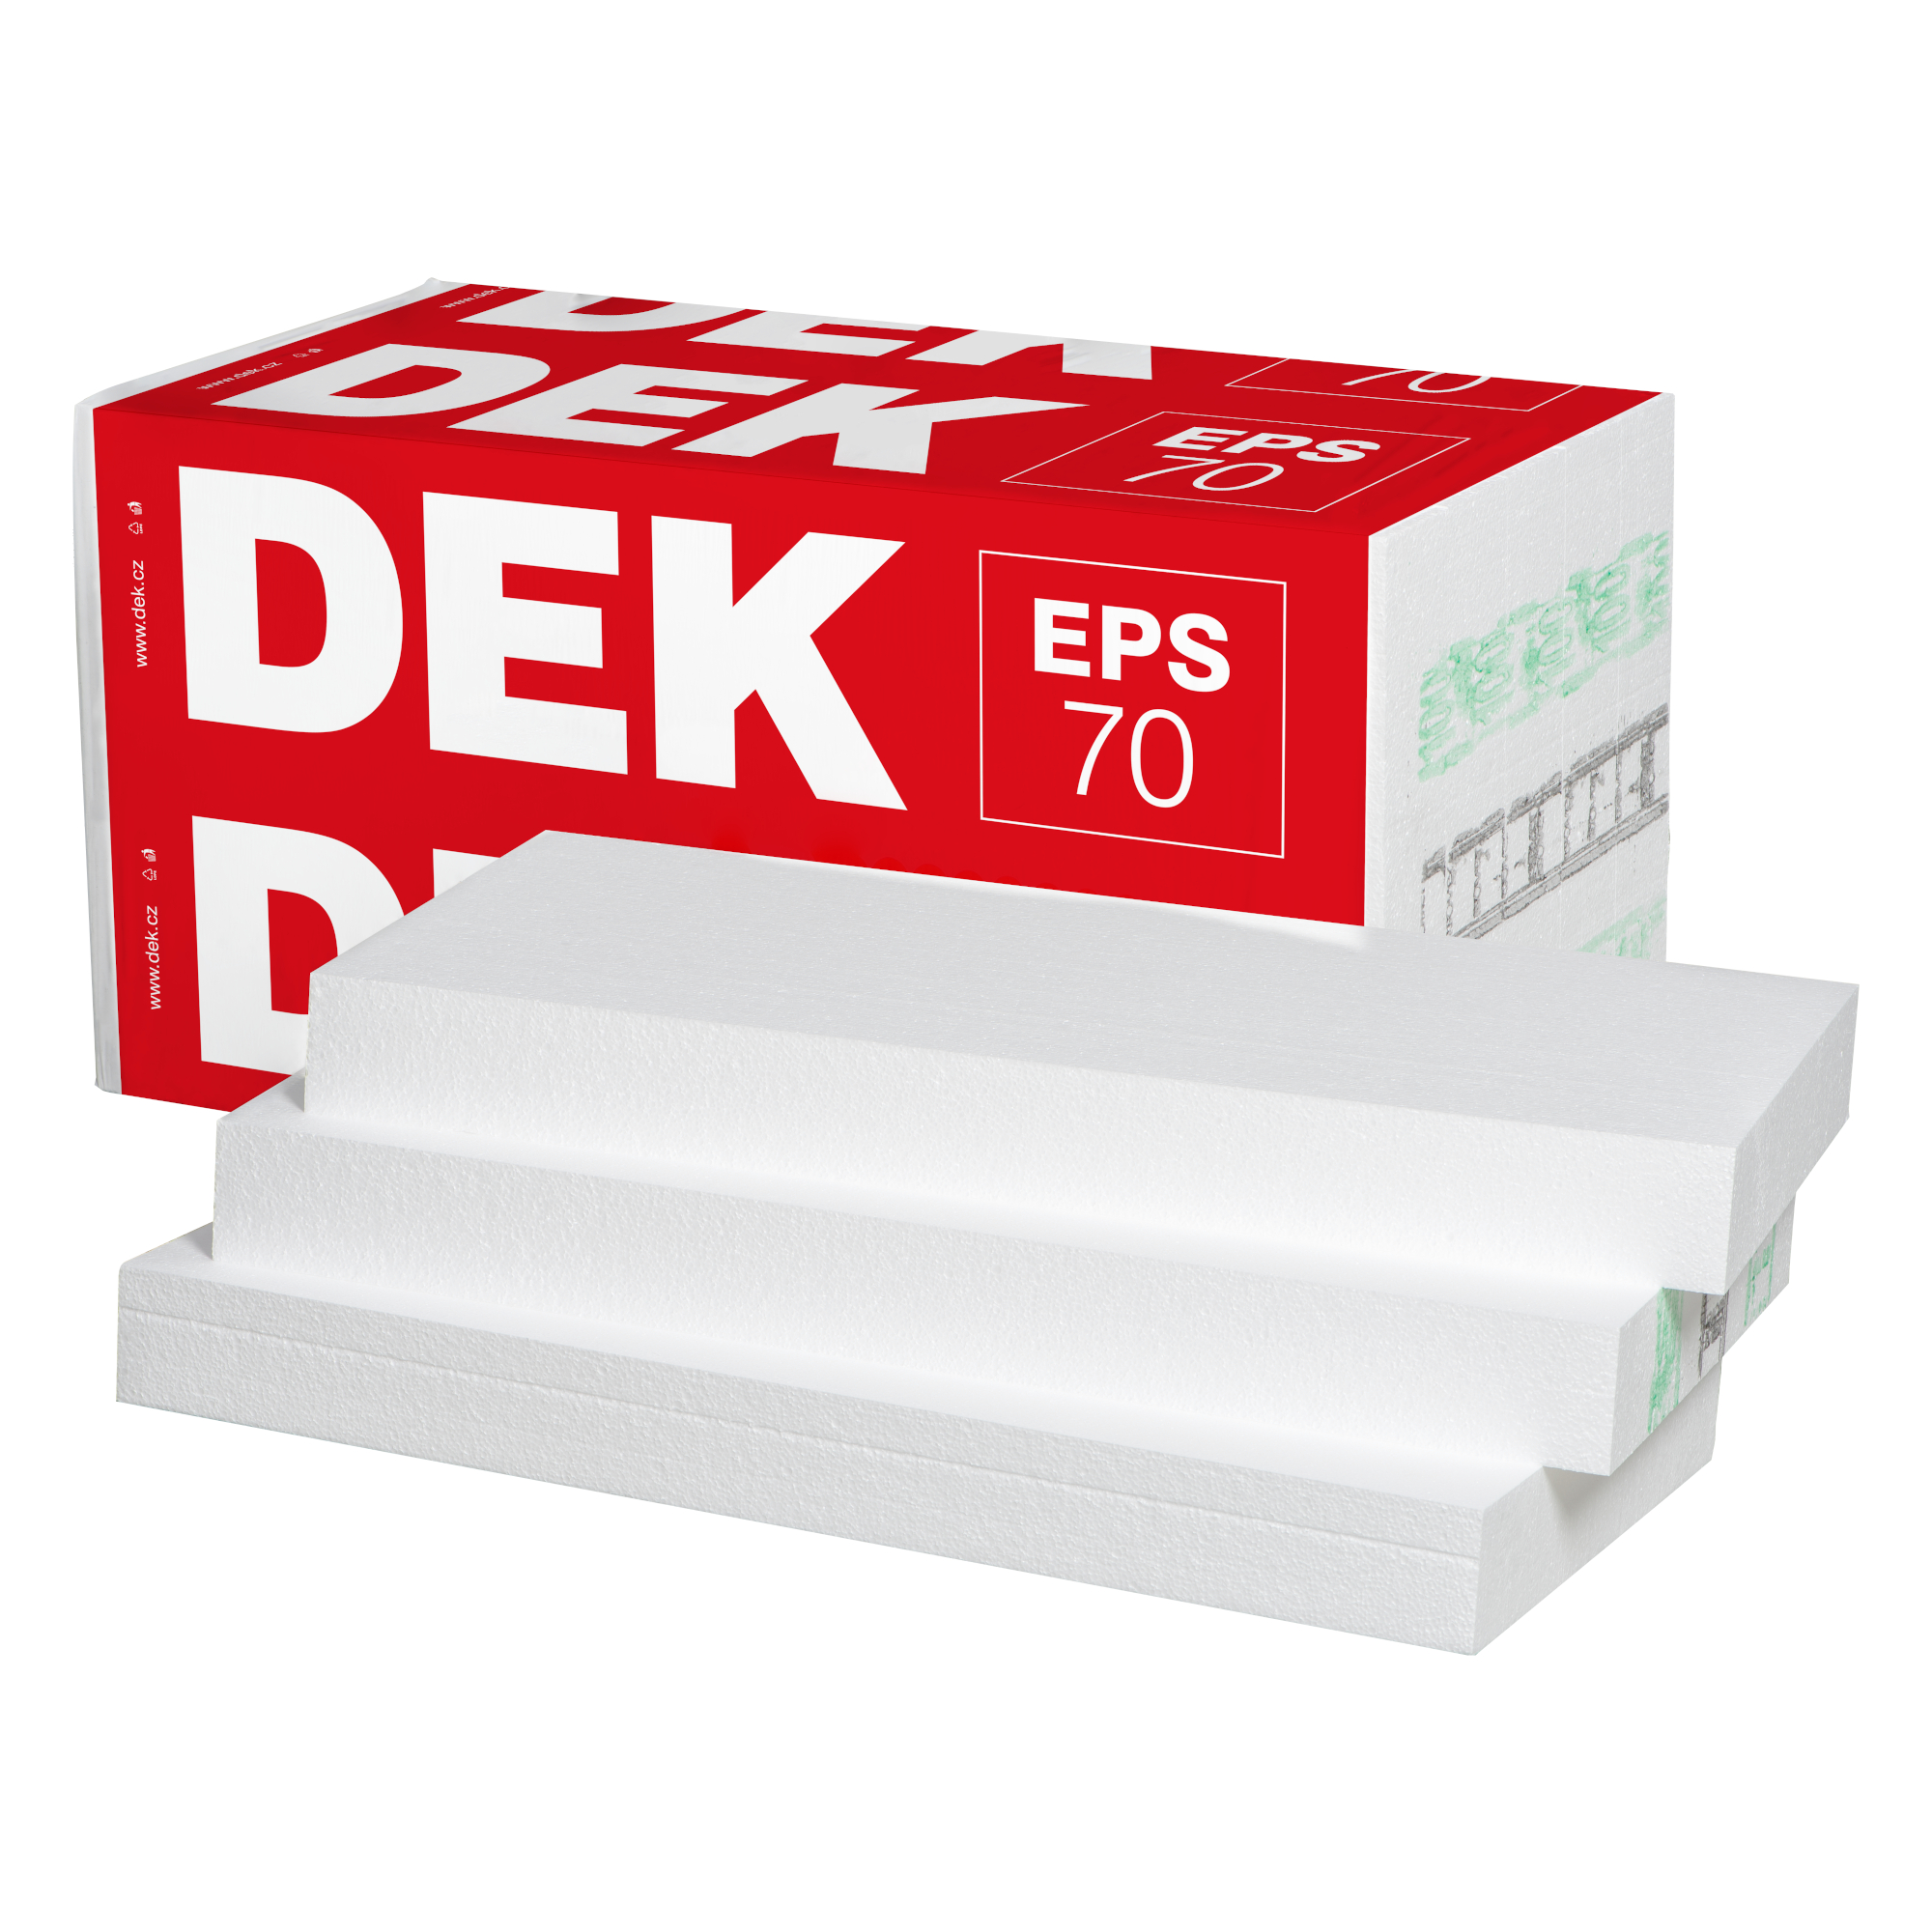 Tepelná izolace DEK EPS 70 F 200 mm (1